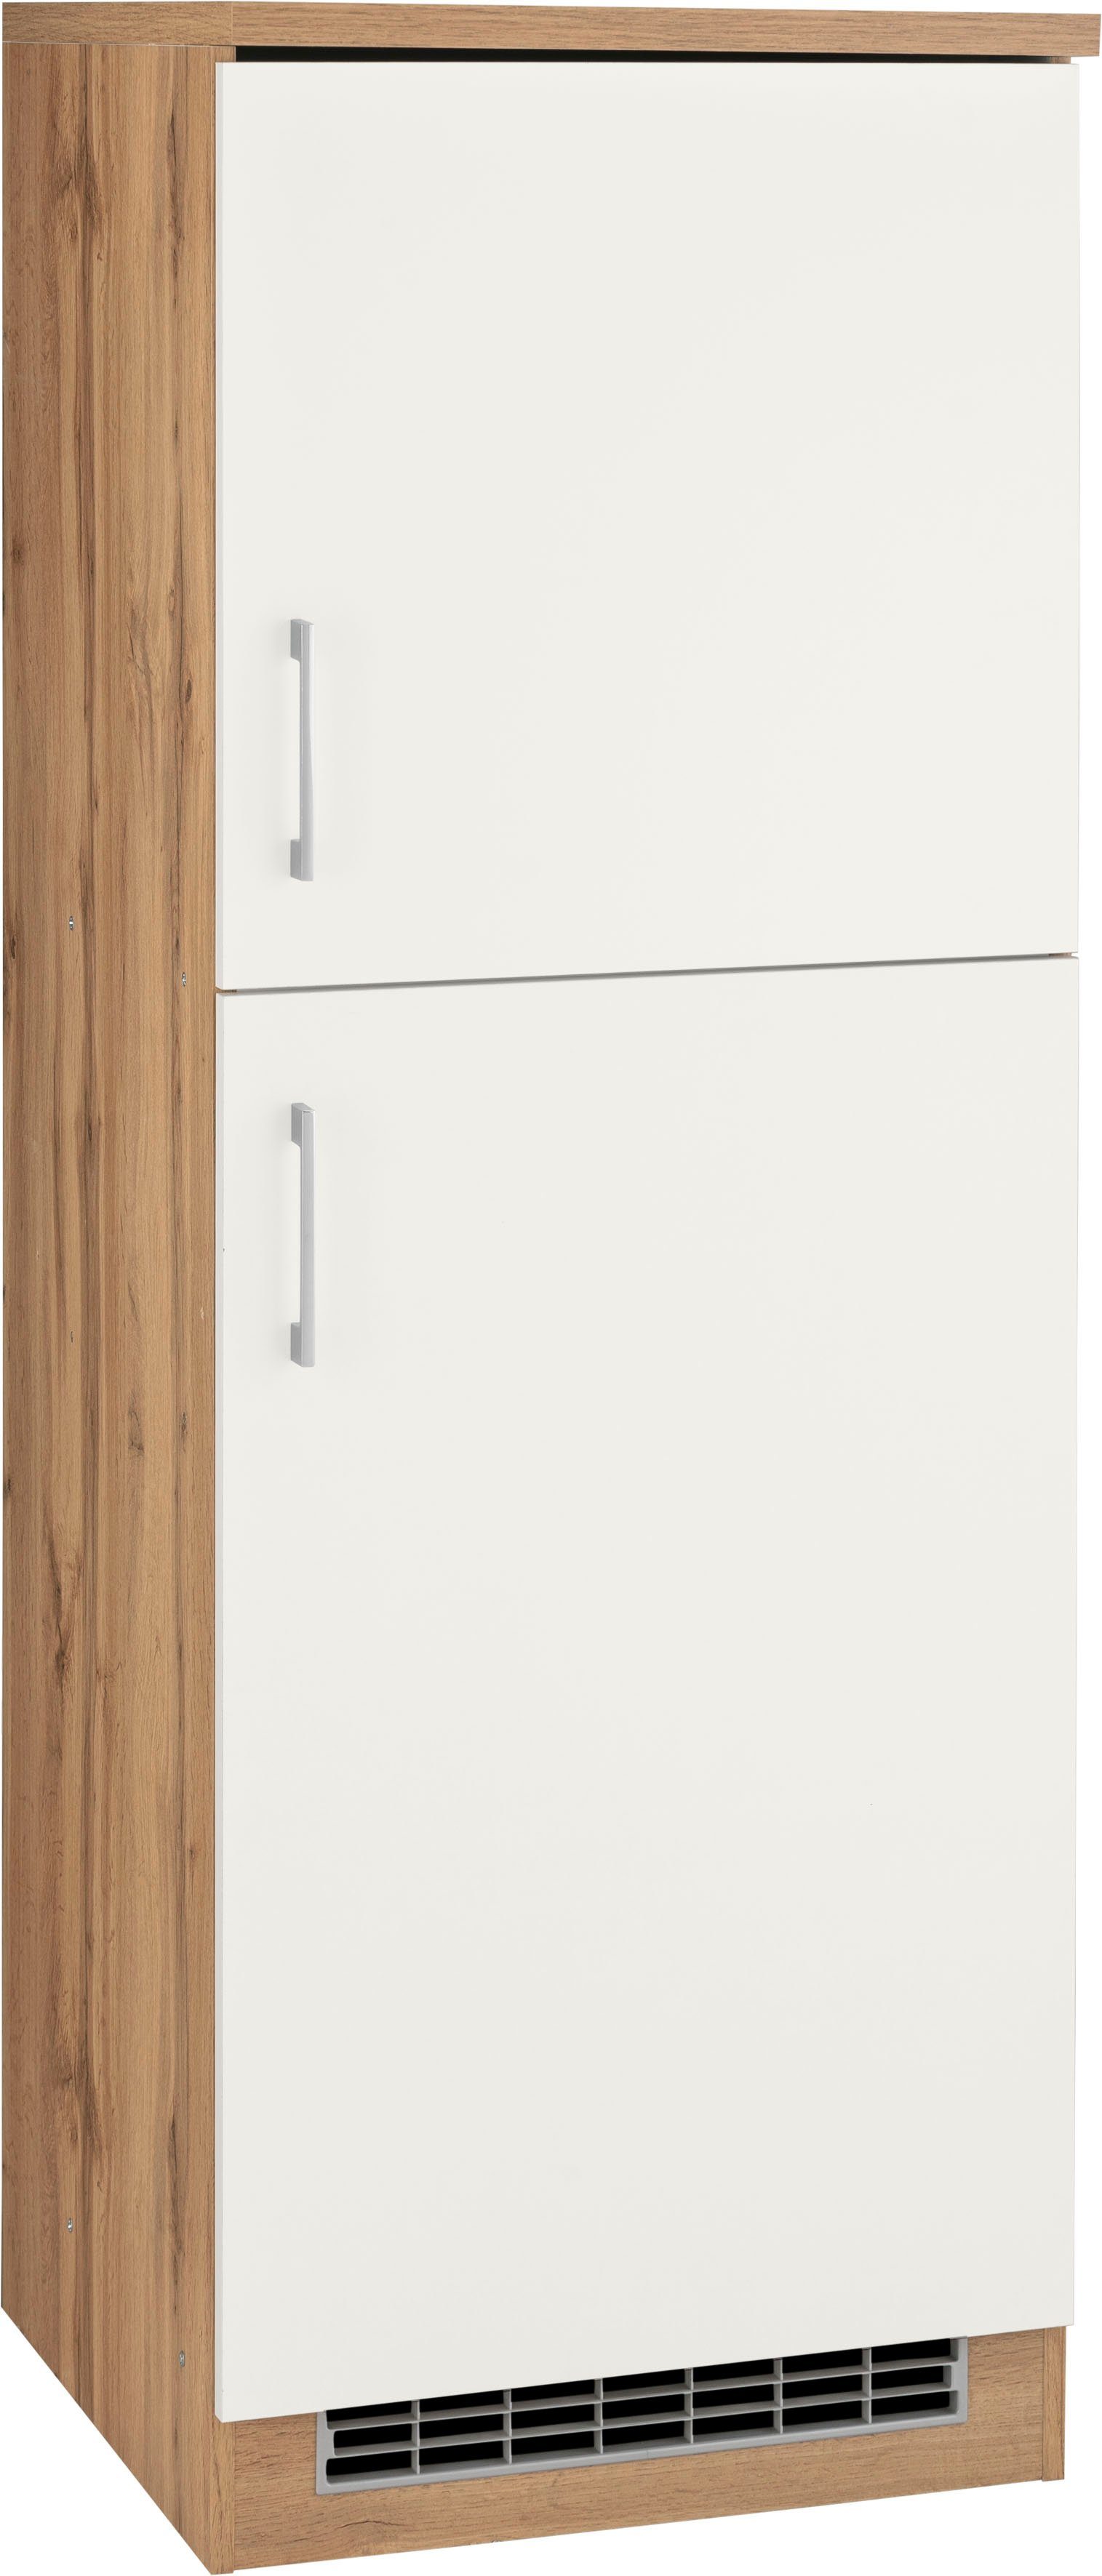 HELD MÖBEL Kühlumbauschrank Colmar 60 cm breit, 165 cm hoch, geeignet für Einbaukühlschrank 88 cm Nische weiß | wotaneiche | Umbauschränke